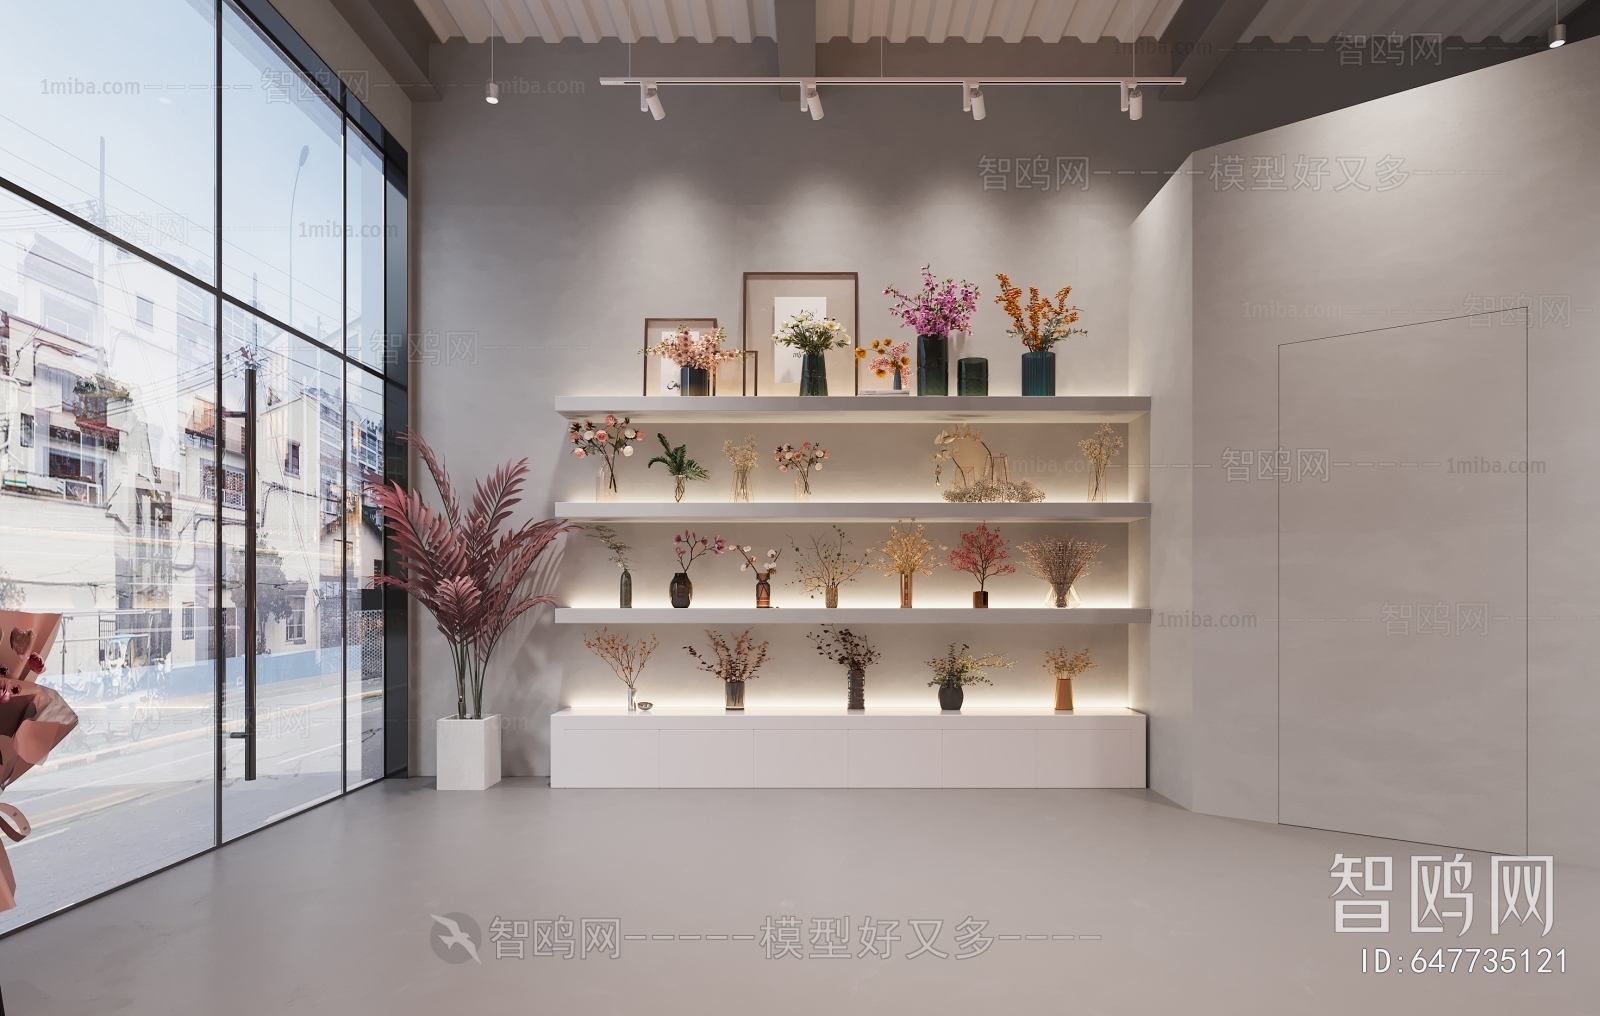 Modern Flower Shop